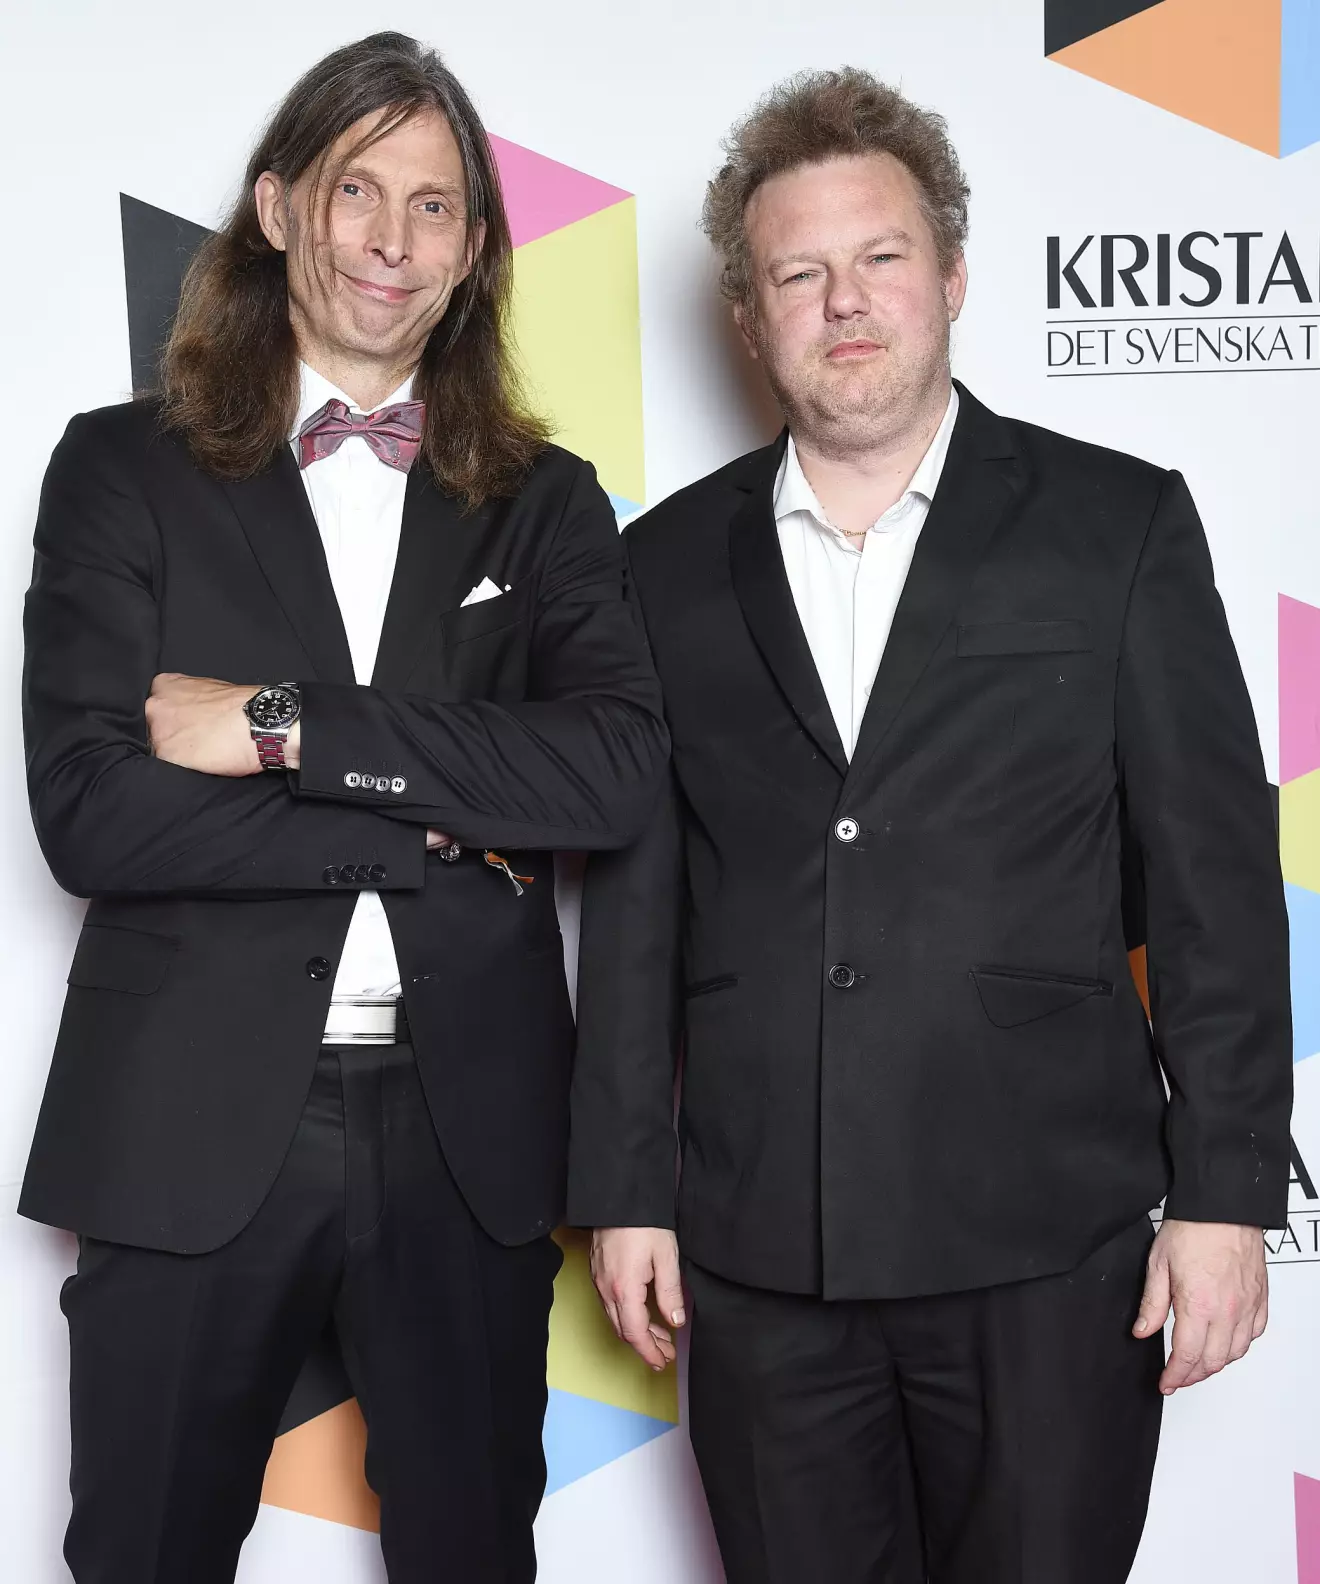 Ola-Conny Wallgren och Morgan Karlsson TV-priset Kristallen delas ut på Cirkus i Stockholm 2019.